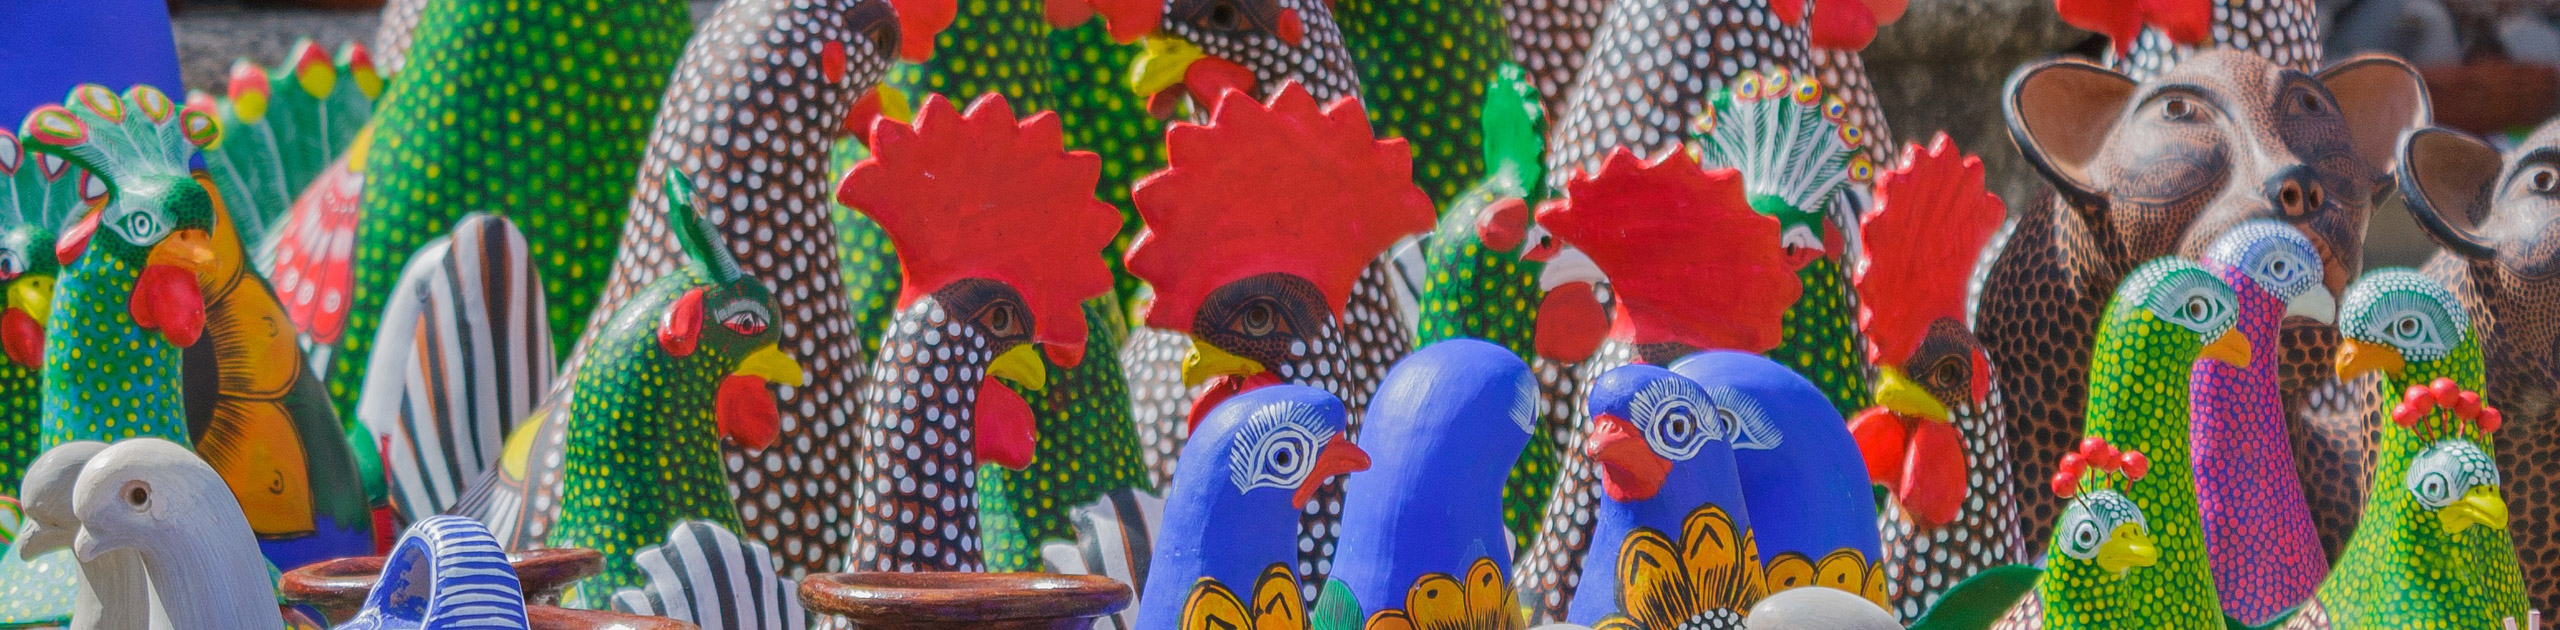 Bunte Tonfiguren in Form von Hähnen und Tauben, Foto: Pixabay